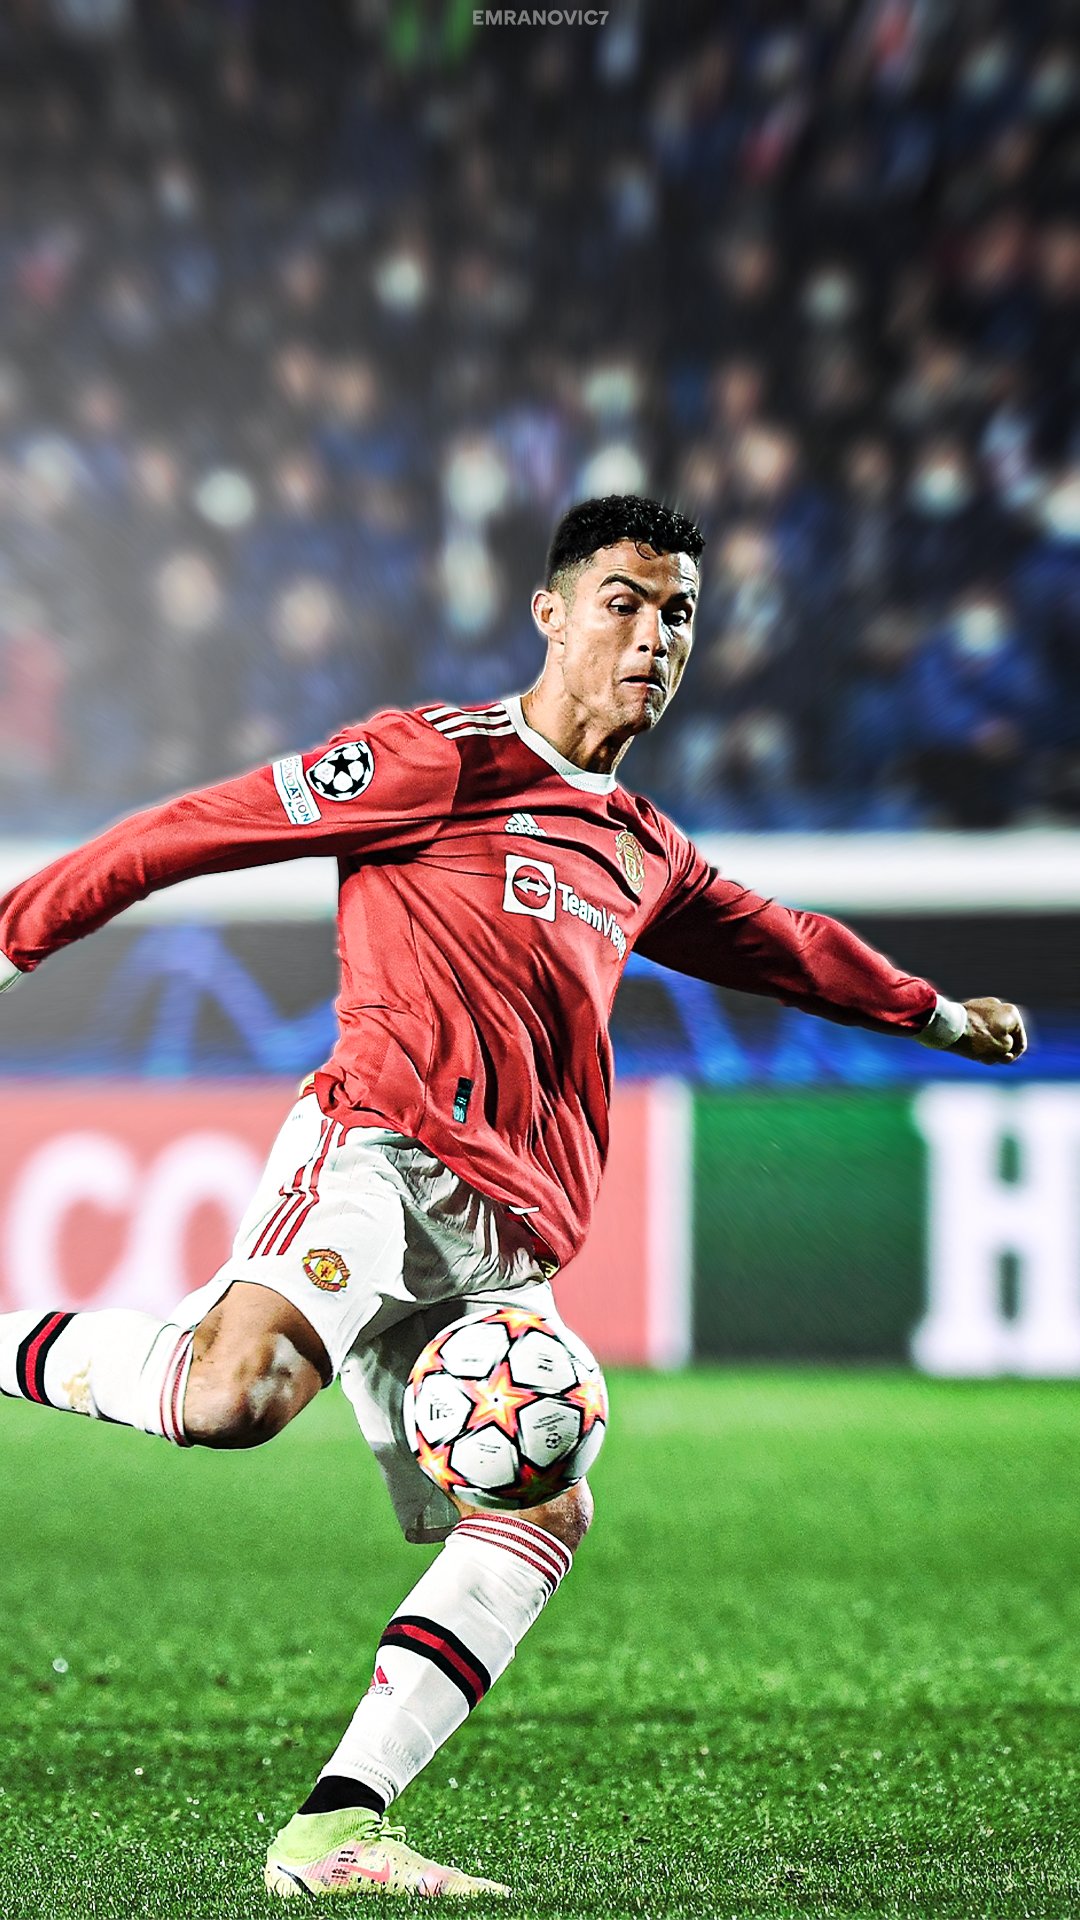 GOAL - Cristiano Ronaldo 2021-22 Champions League: 🆚